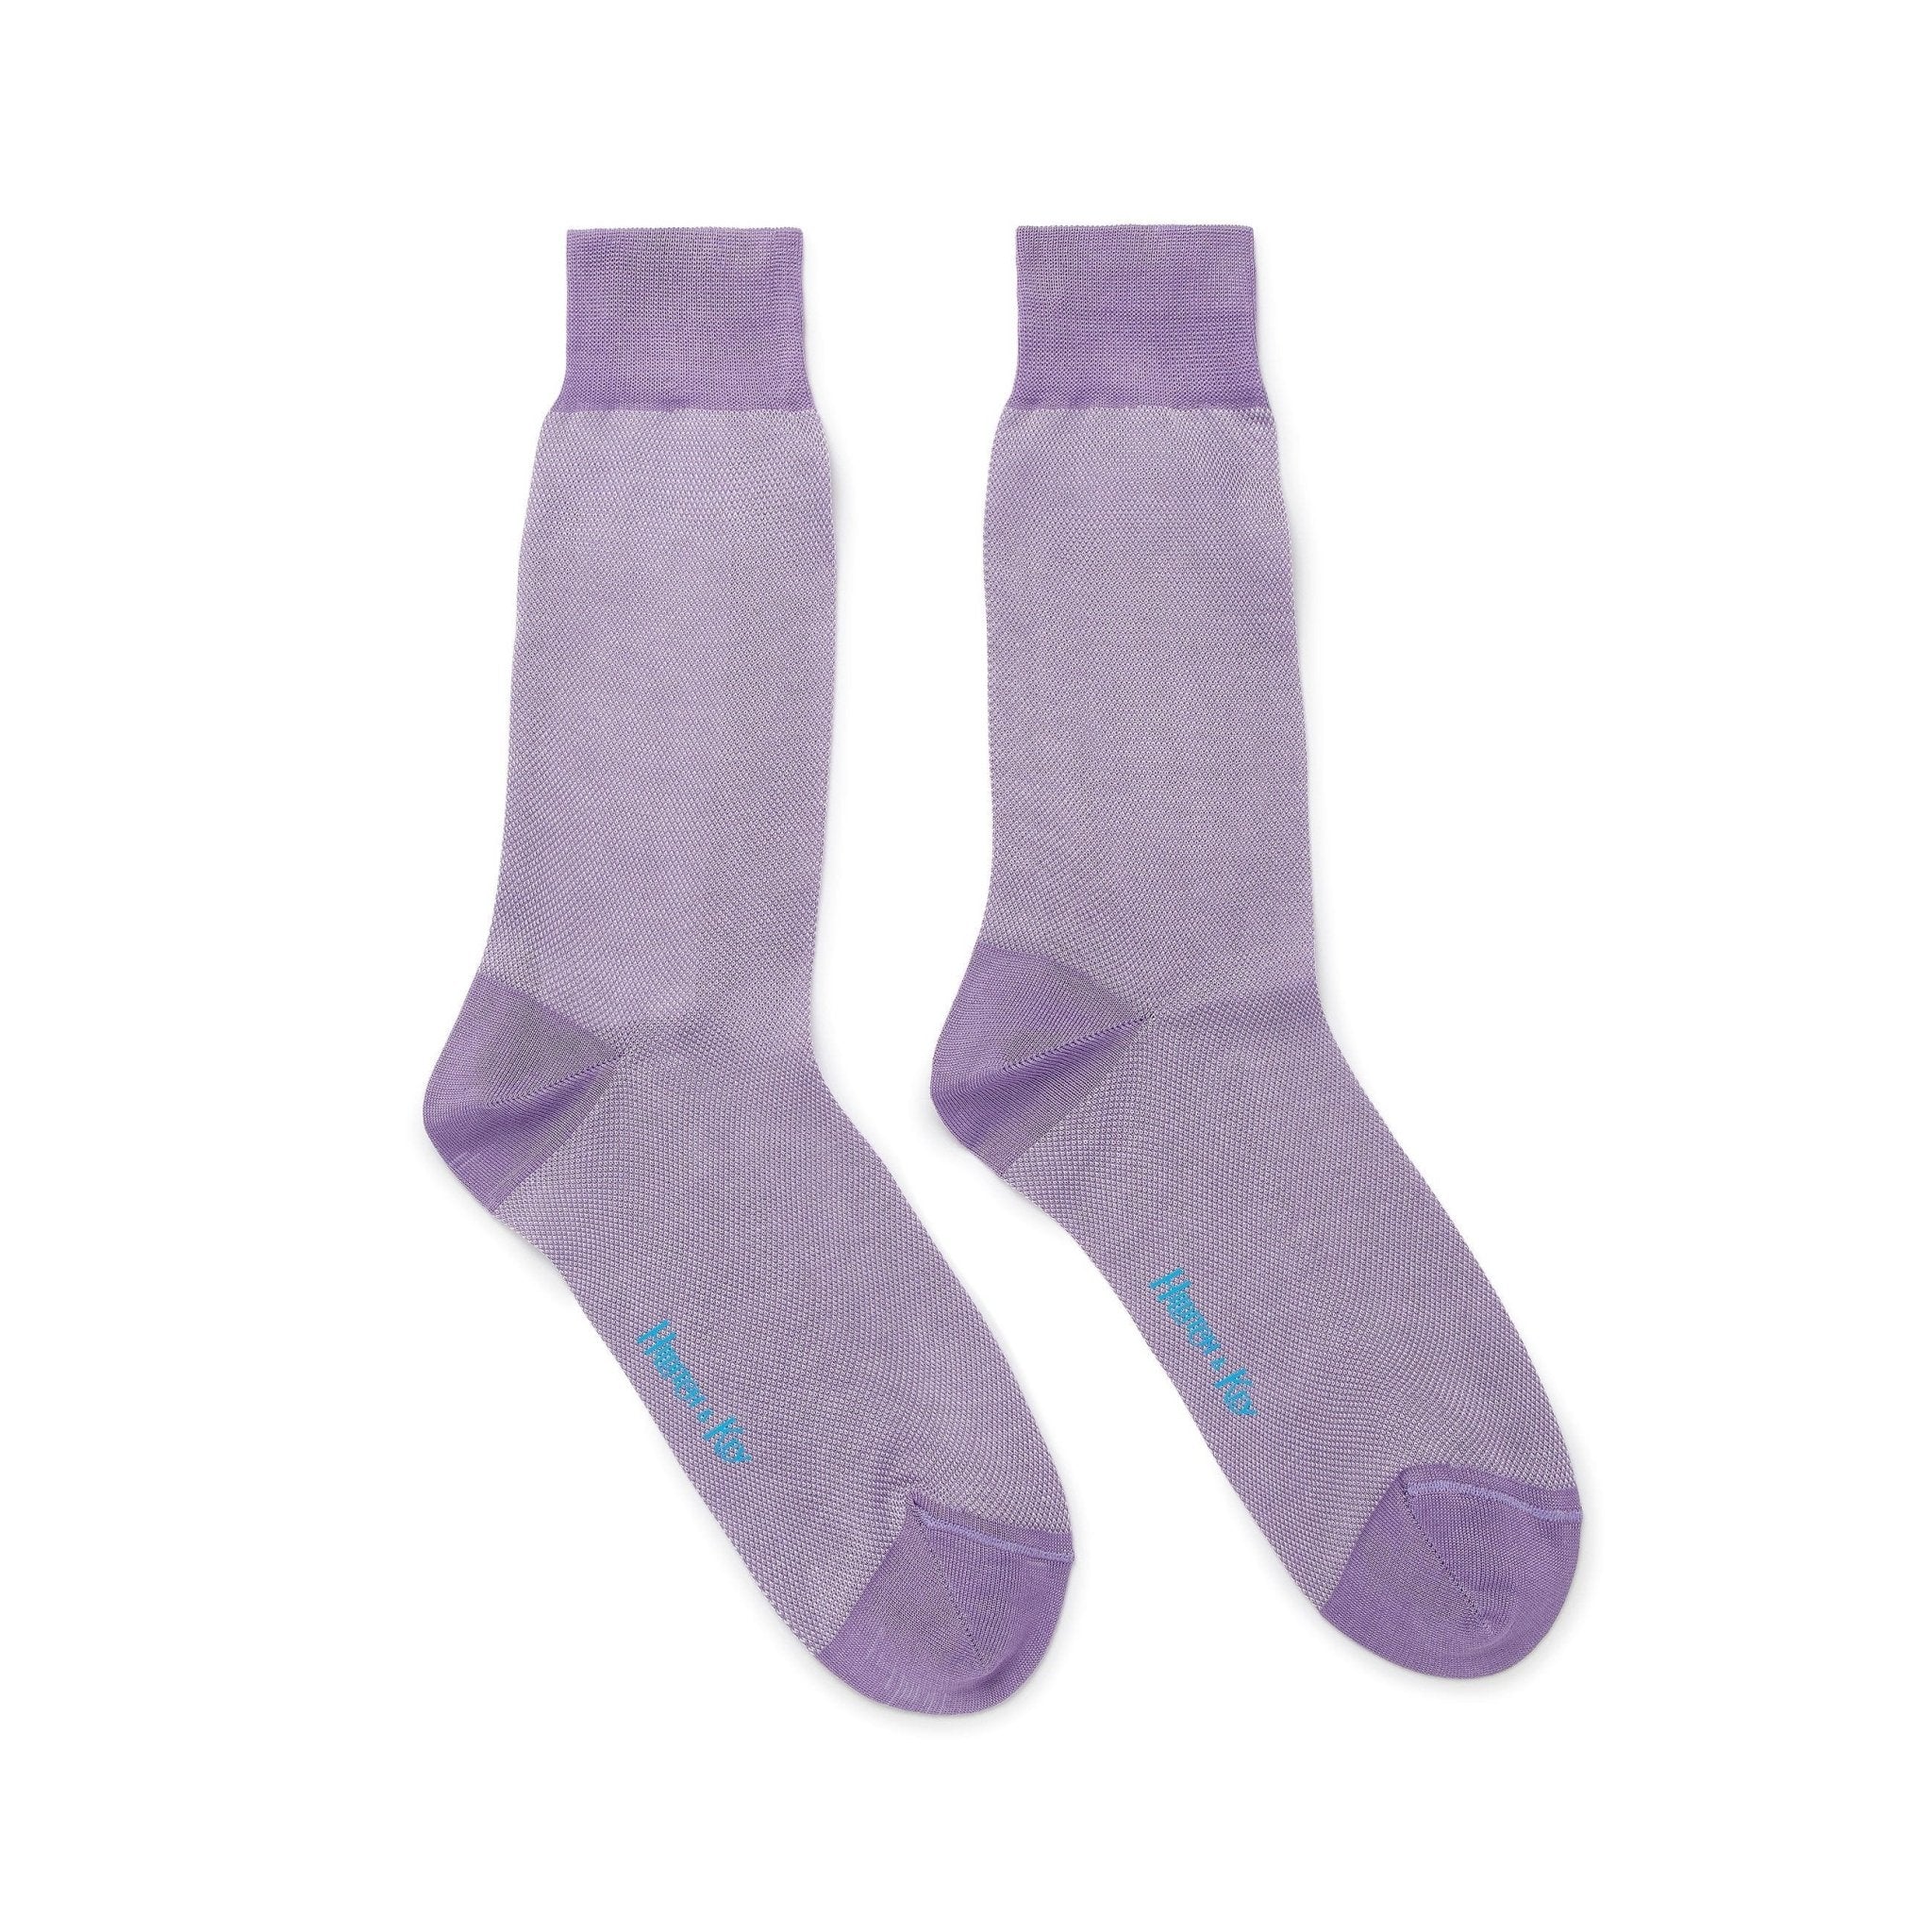 Lilac & White Pin Dot Cotton Short Socks